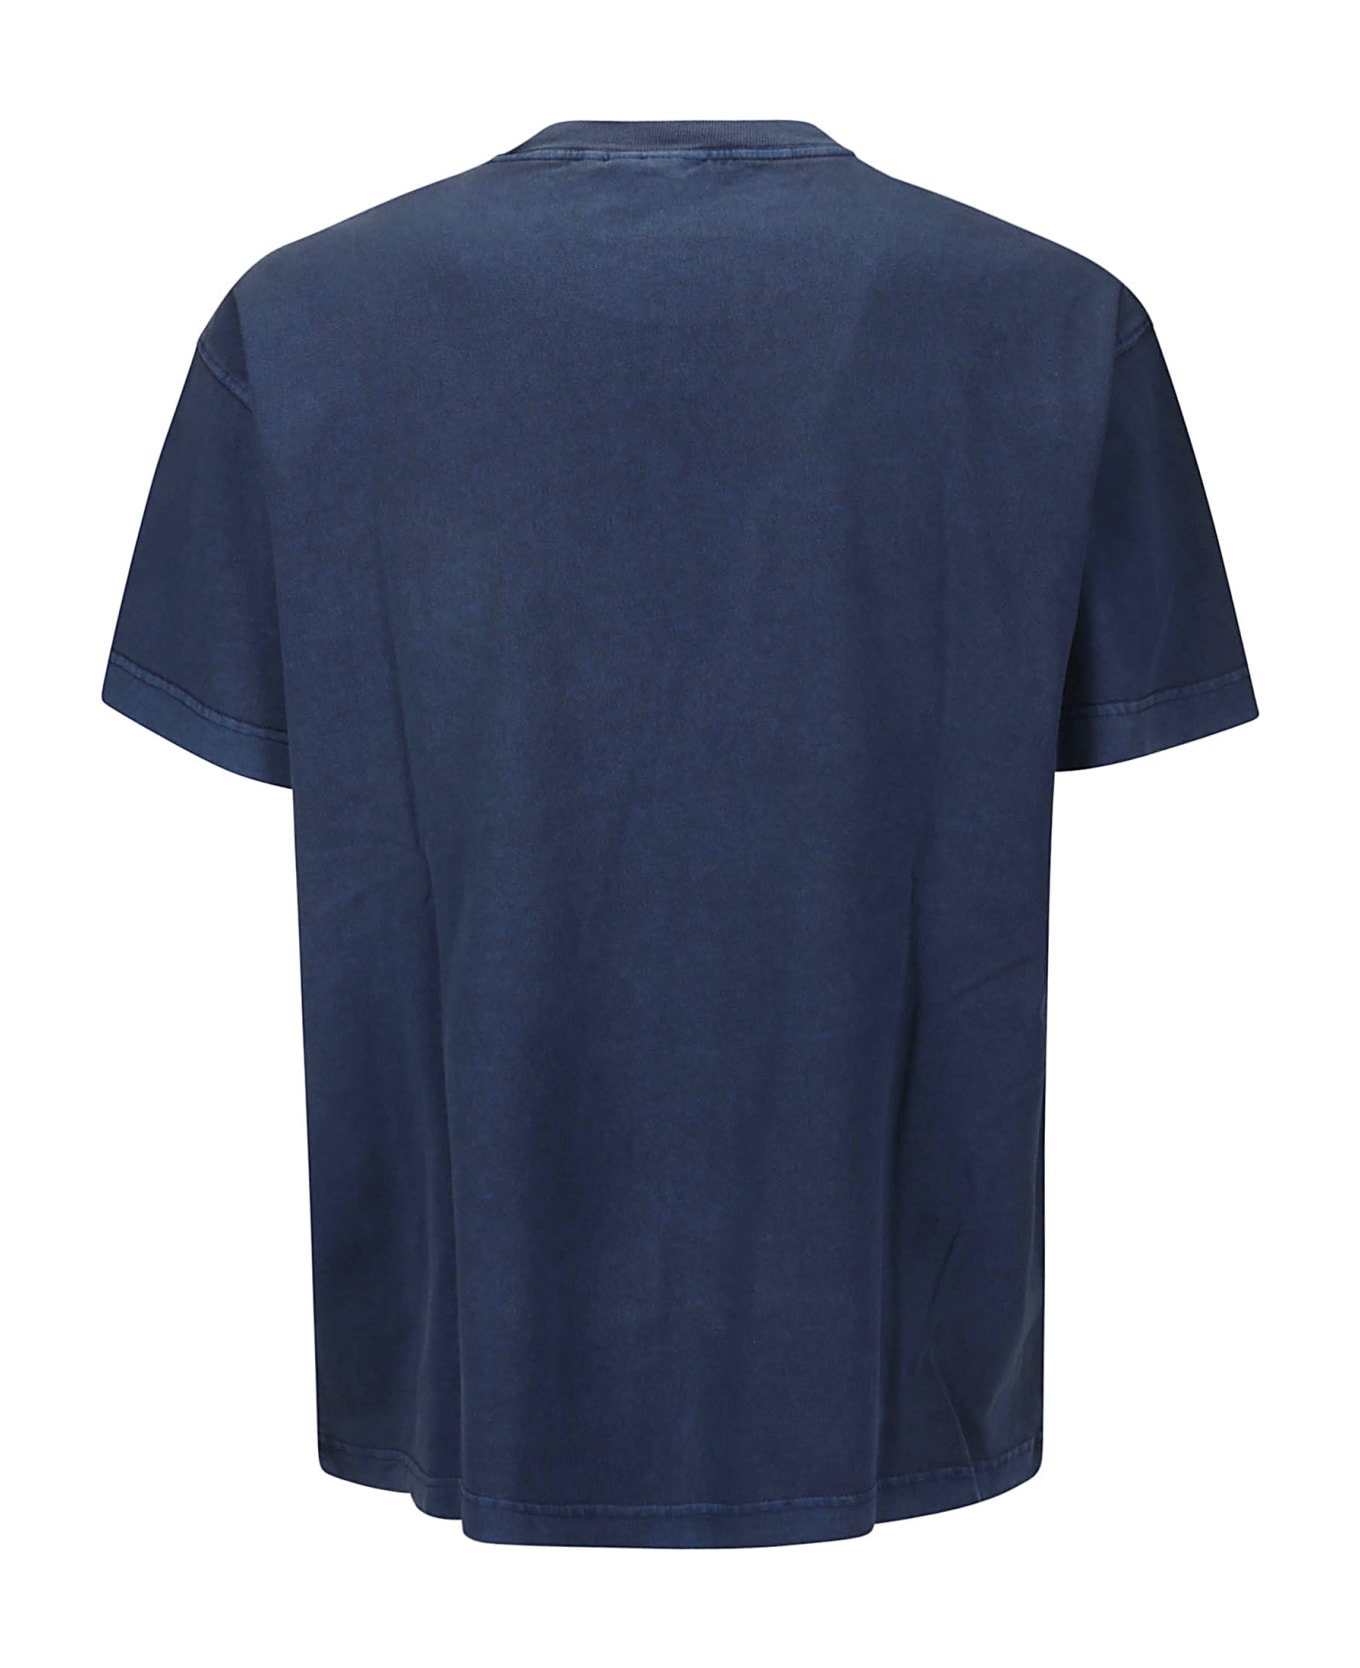 Carhartt S/s Nelson T-shirt Cotton Single Jersey - ELDER